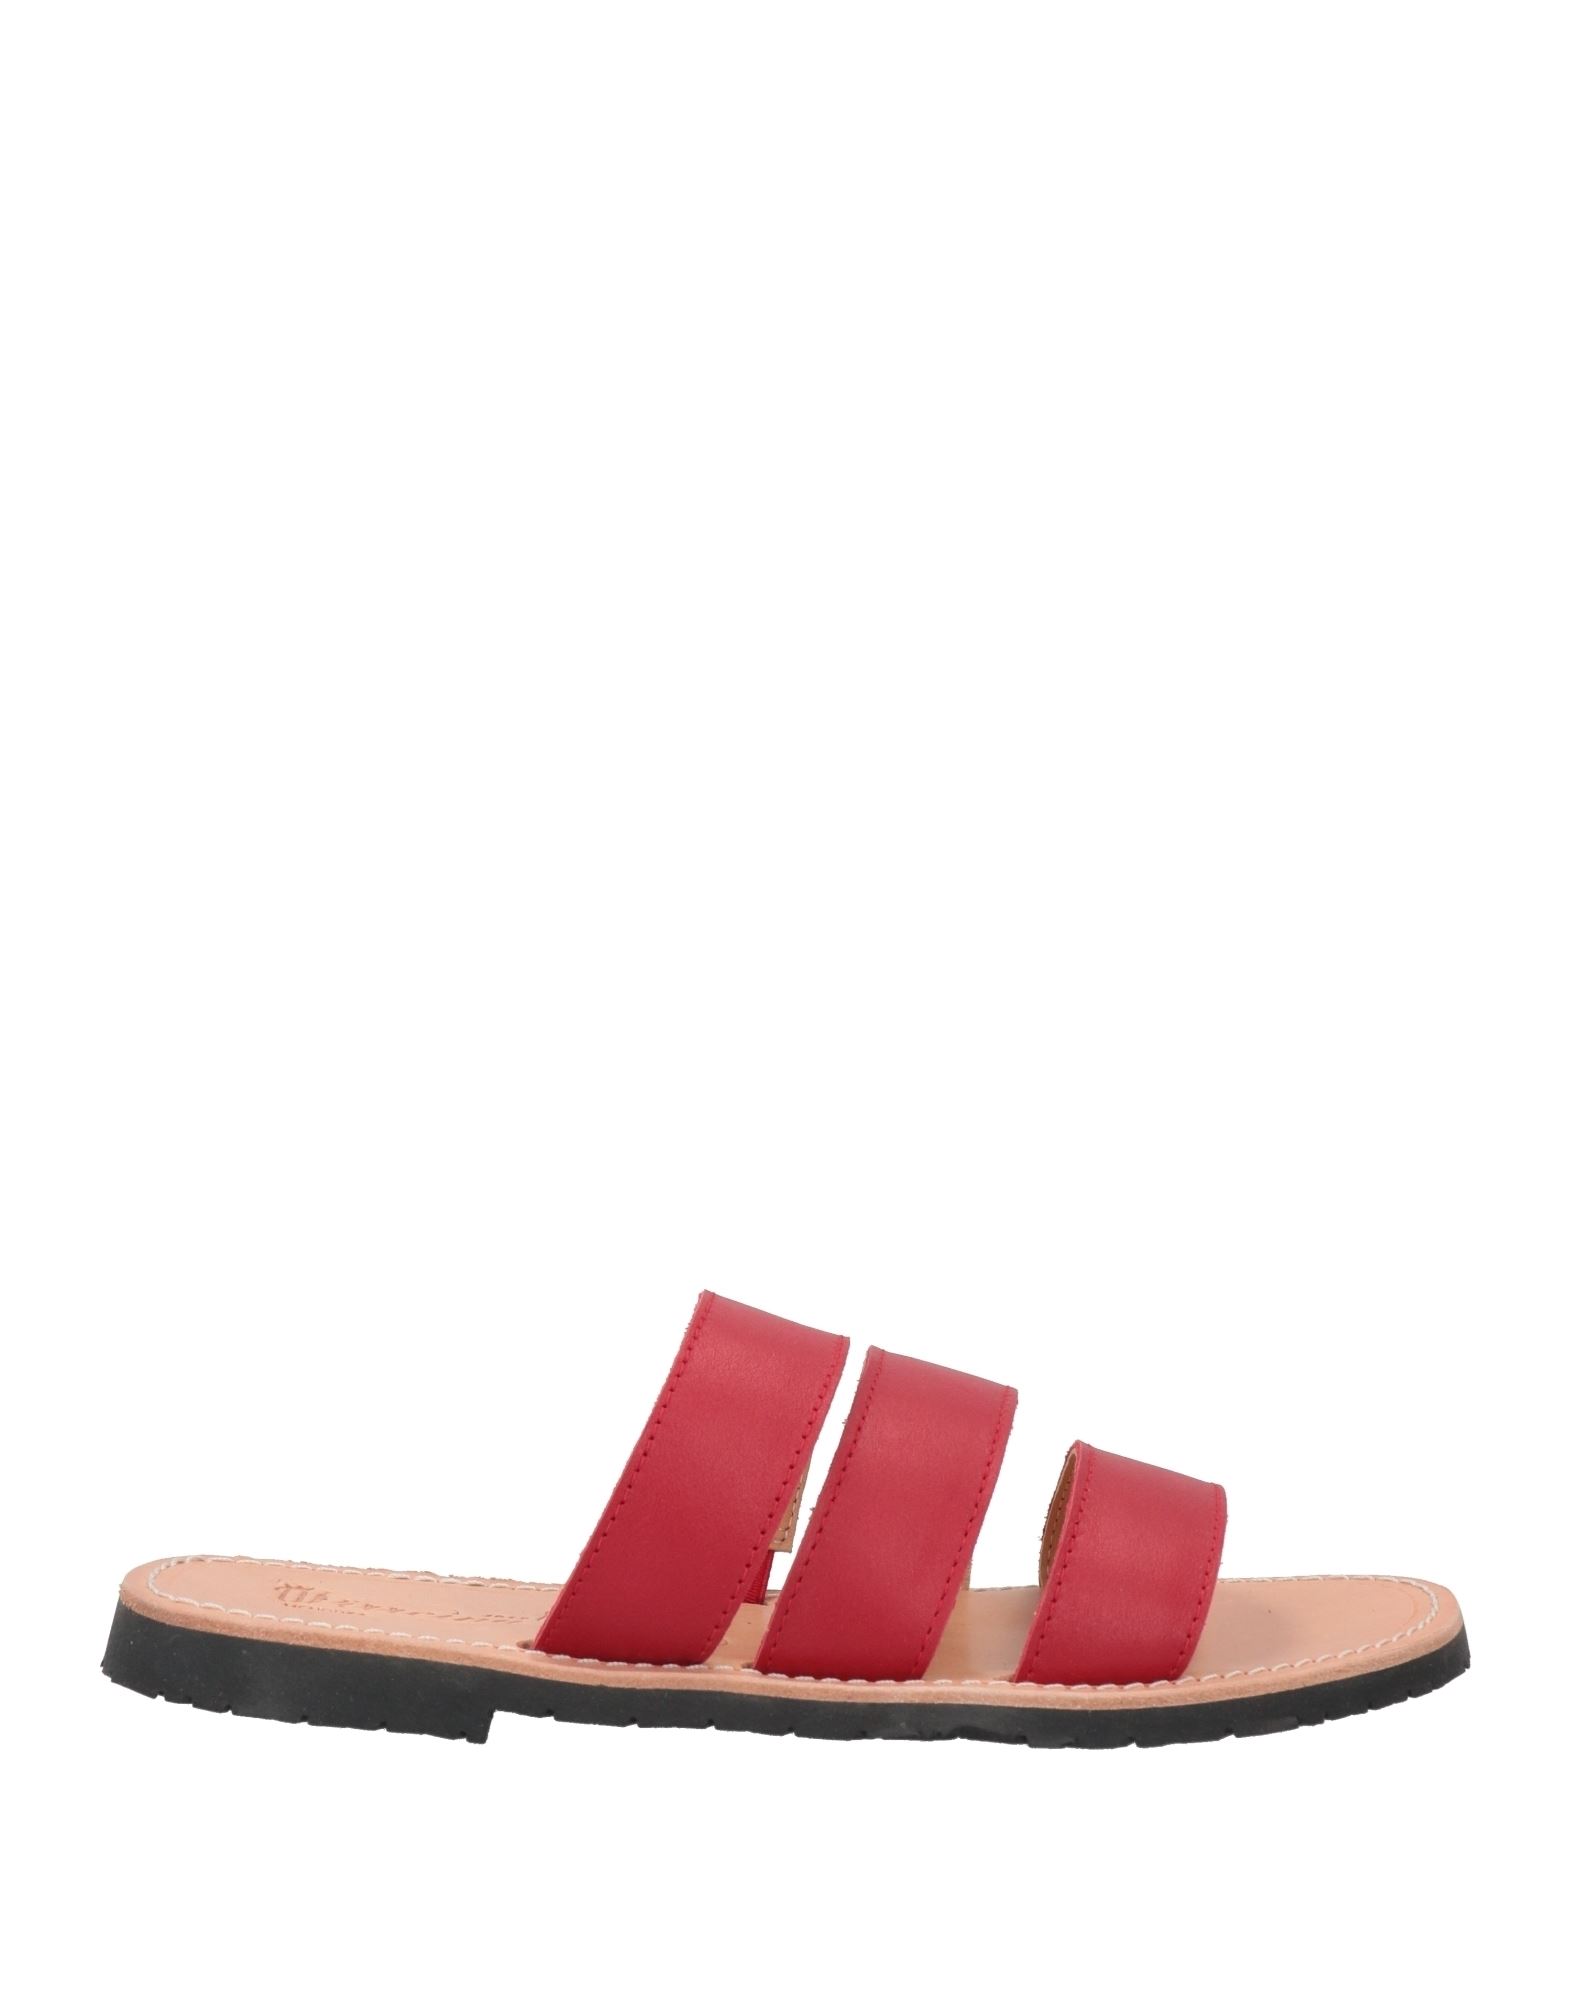 Virreina Sandals In Red